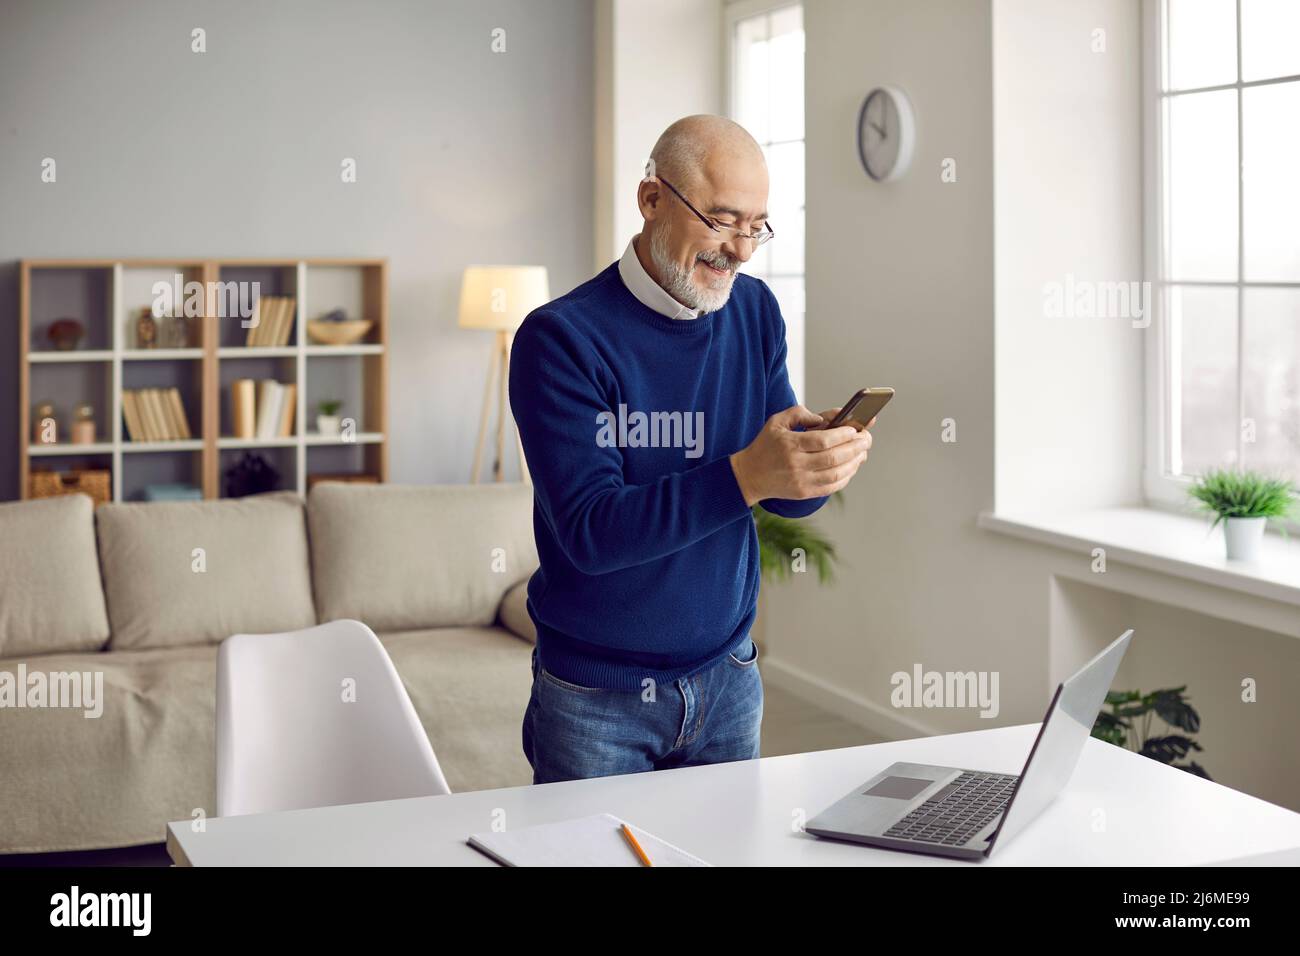 Un homme d'âge moyen travaille sur un ordinateur portable utilise un smartphone Banque D'Images